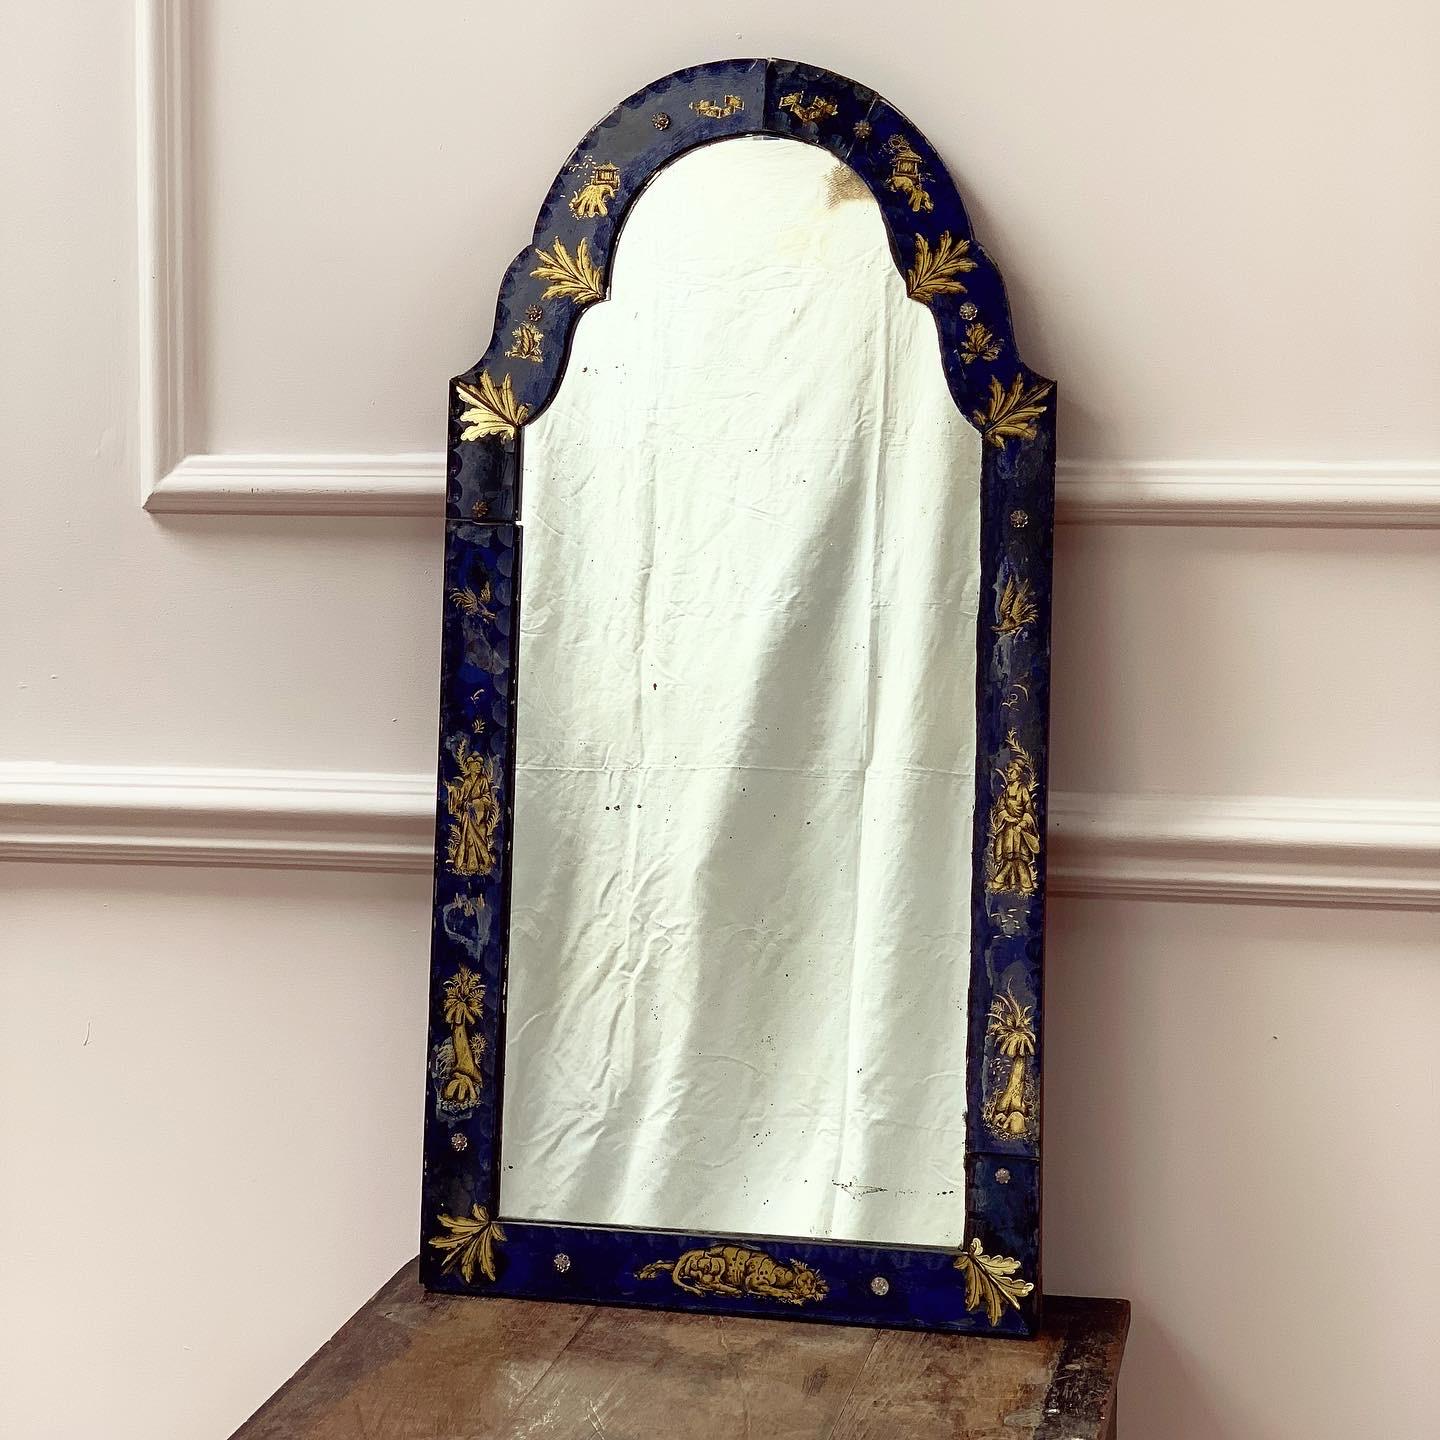 Miroir de pilier en verre églomisé de George III avec plaque de miroir arquée dans un cadre en verre représentant des figures féminines, des animaux et des feuilles en chinoiserie dorée sur un fond bleu cobalt.